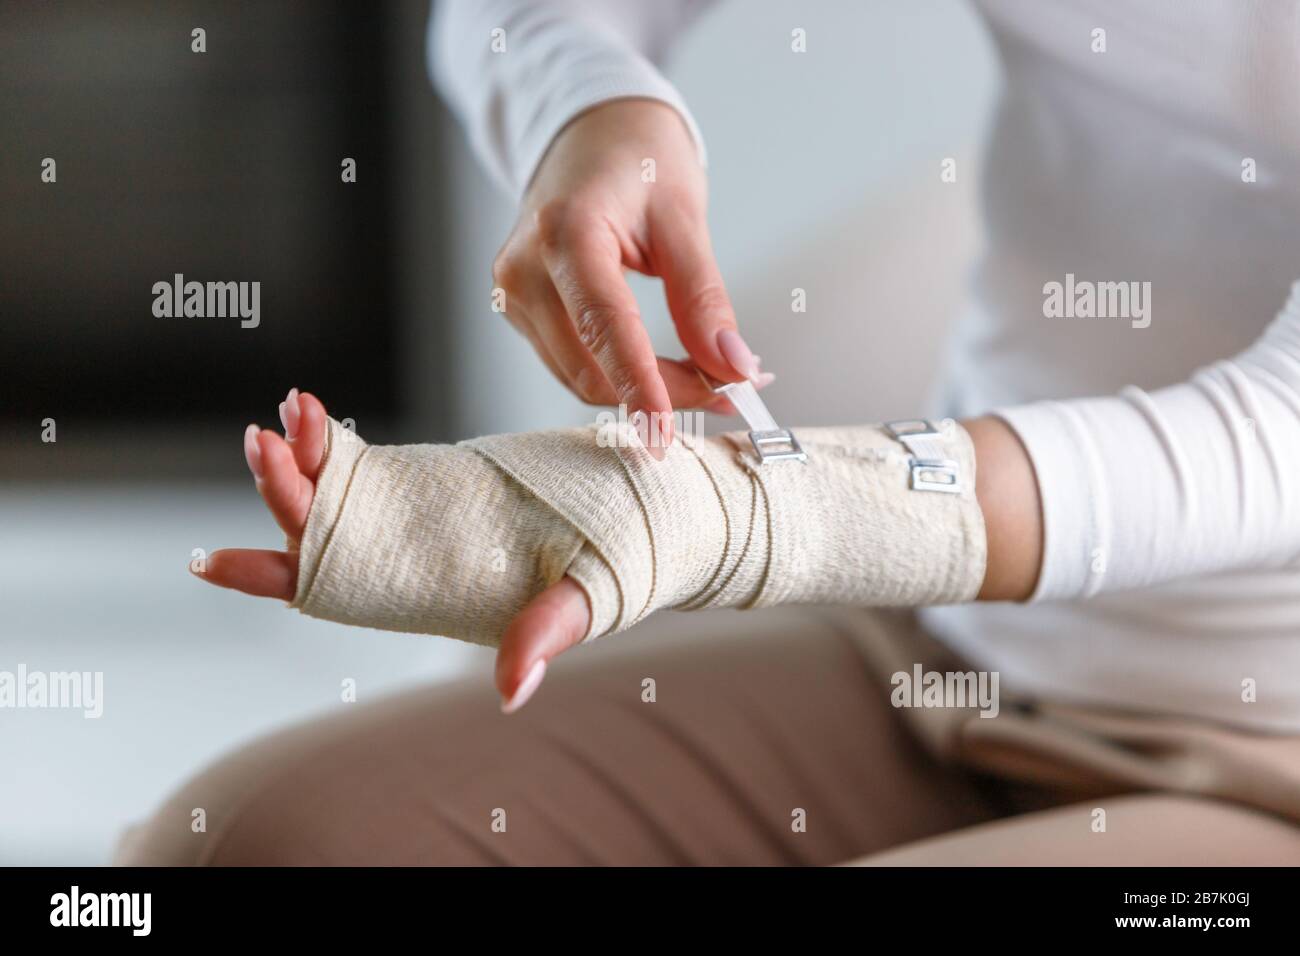 Nahaufnahme der Frau, die ihr schmerzhaftes Handgelenk mit einem flexiblen elastischen, unterstützenden orthopädischen Verband nach erfolglosen Sport- oder Verletzungsverletzungen umwickelt. Karpaltunnel sy Stockfoto